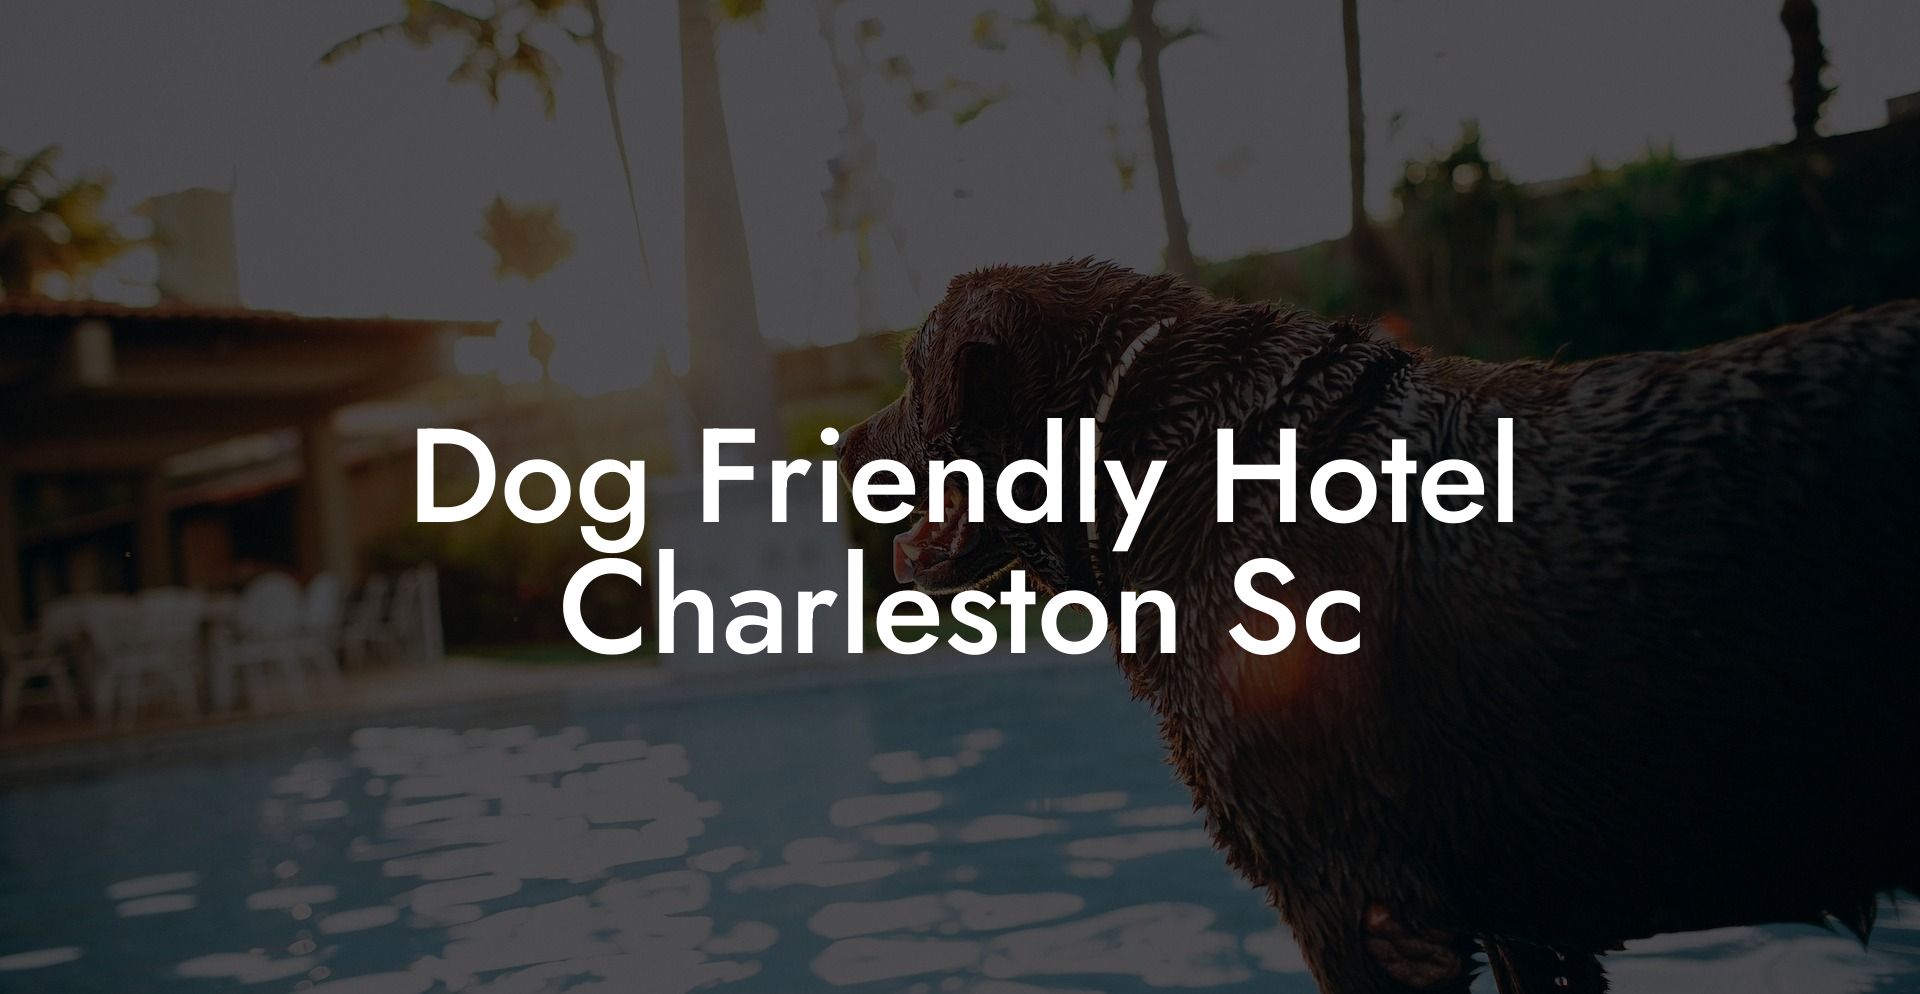 Dog Friendly Hotel Charleston Sc